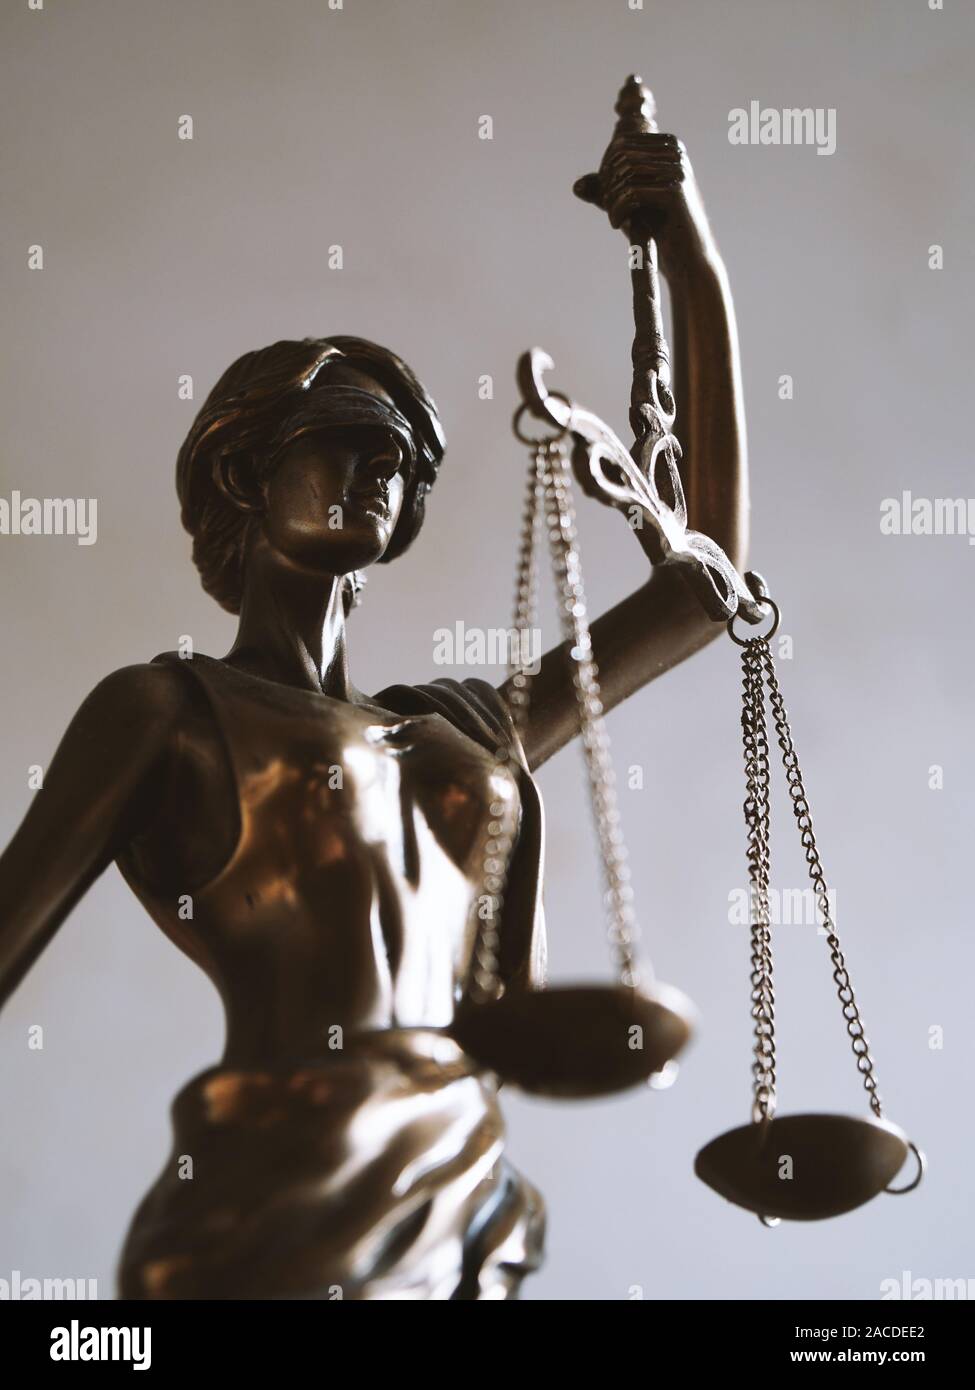 Signora giustizia o justitia - gli occhi bendati figurina holding bilance di precisione - diritto alla competenza e imparzialità simbolo Foto Stock